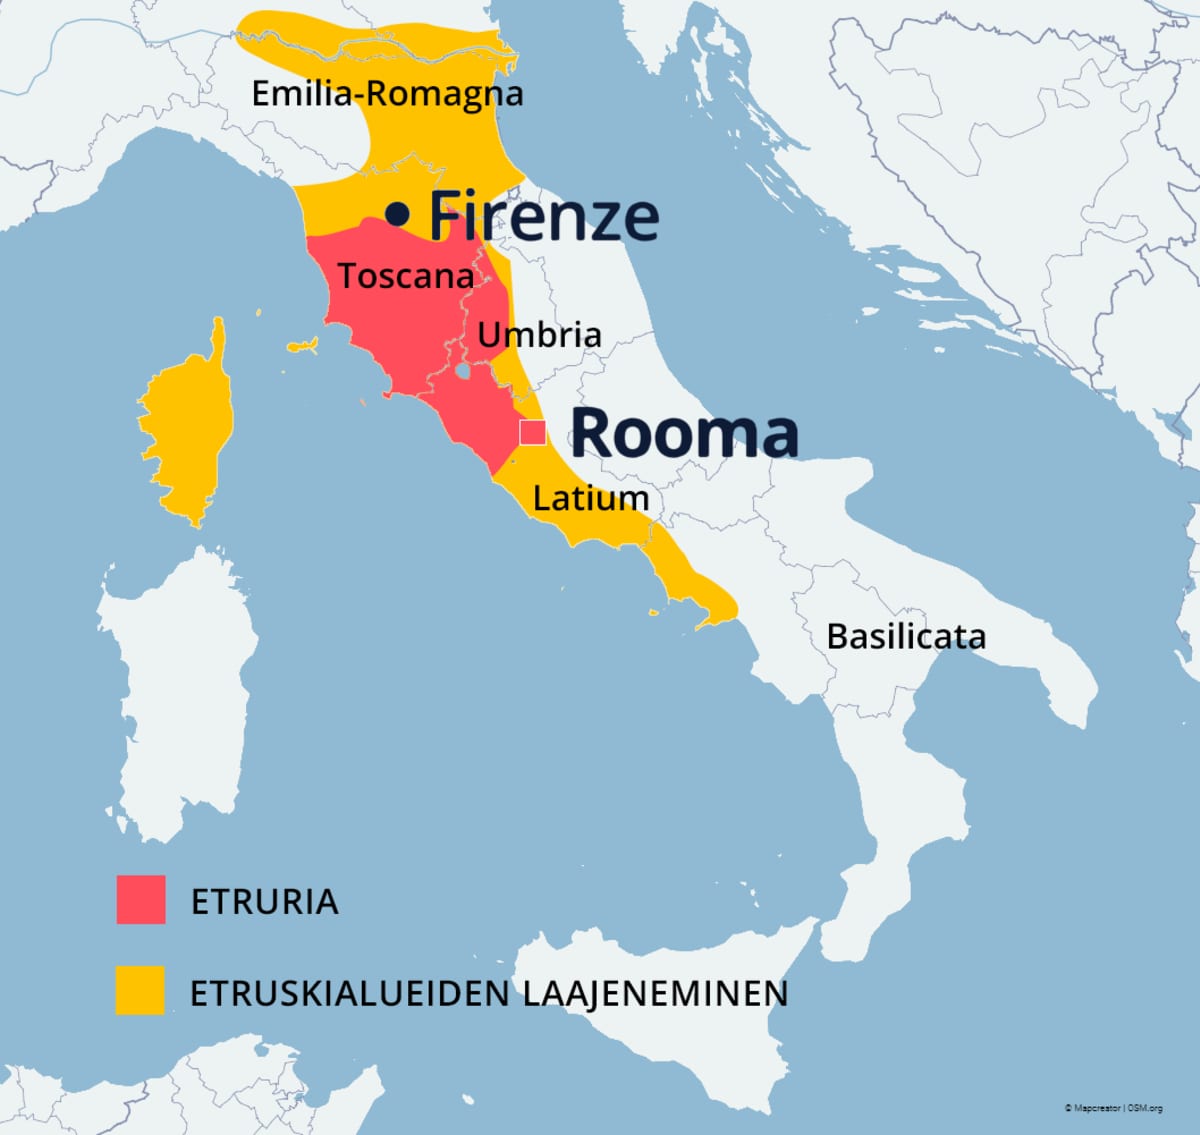 Kartta etruskien Etruriasta ja etruskialueiden laajenemisesta. Etruria oli Firenzen ja Rooman välissä.